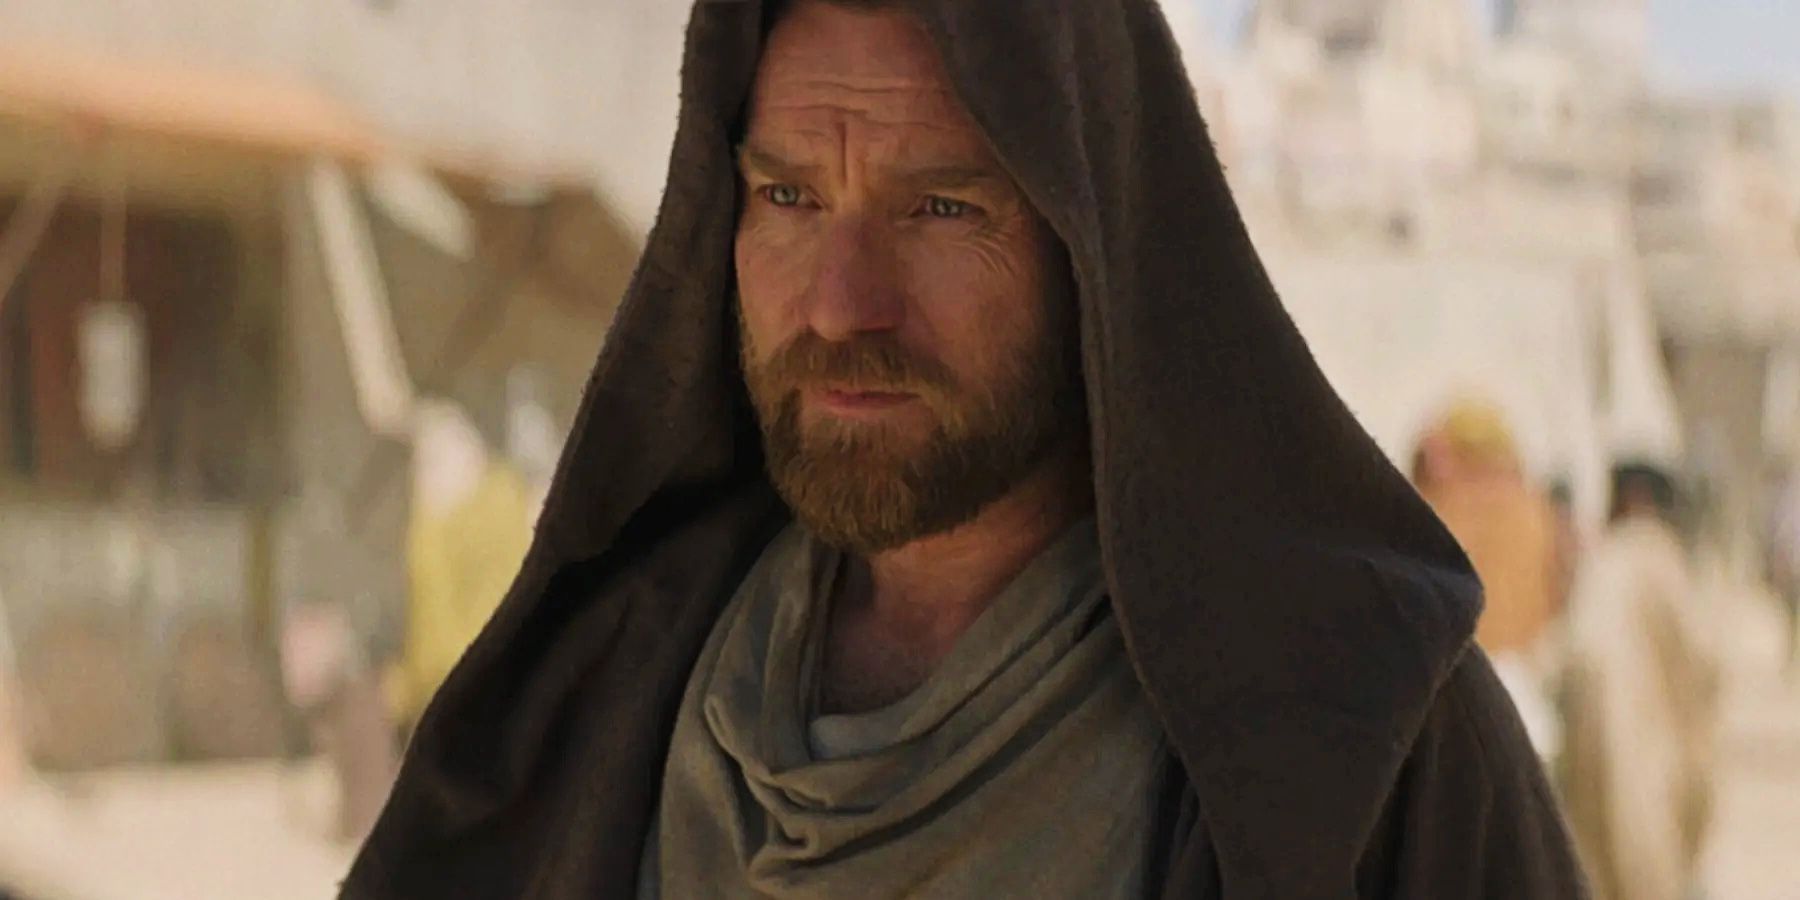 Ewan McGregor looking serious with his hood raised in the Obi-Wan Kenobi series on Disney Plus.